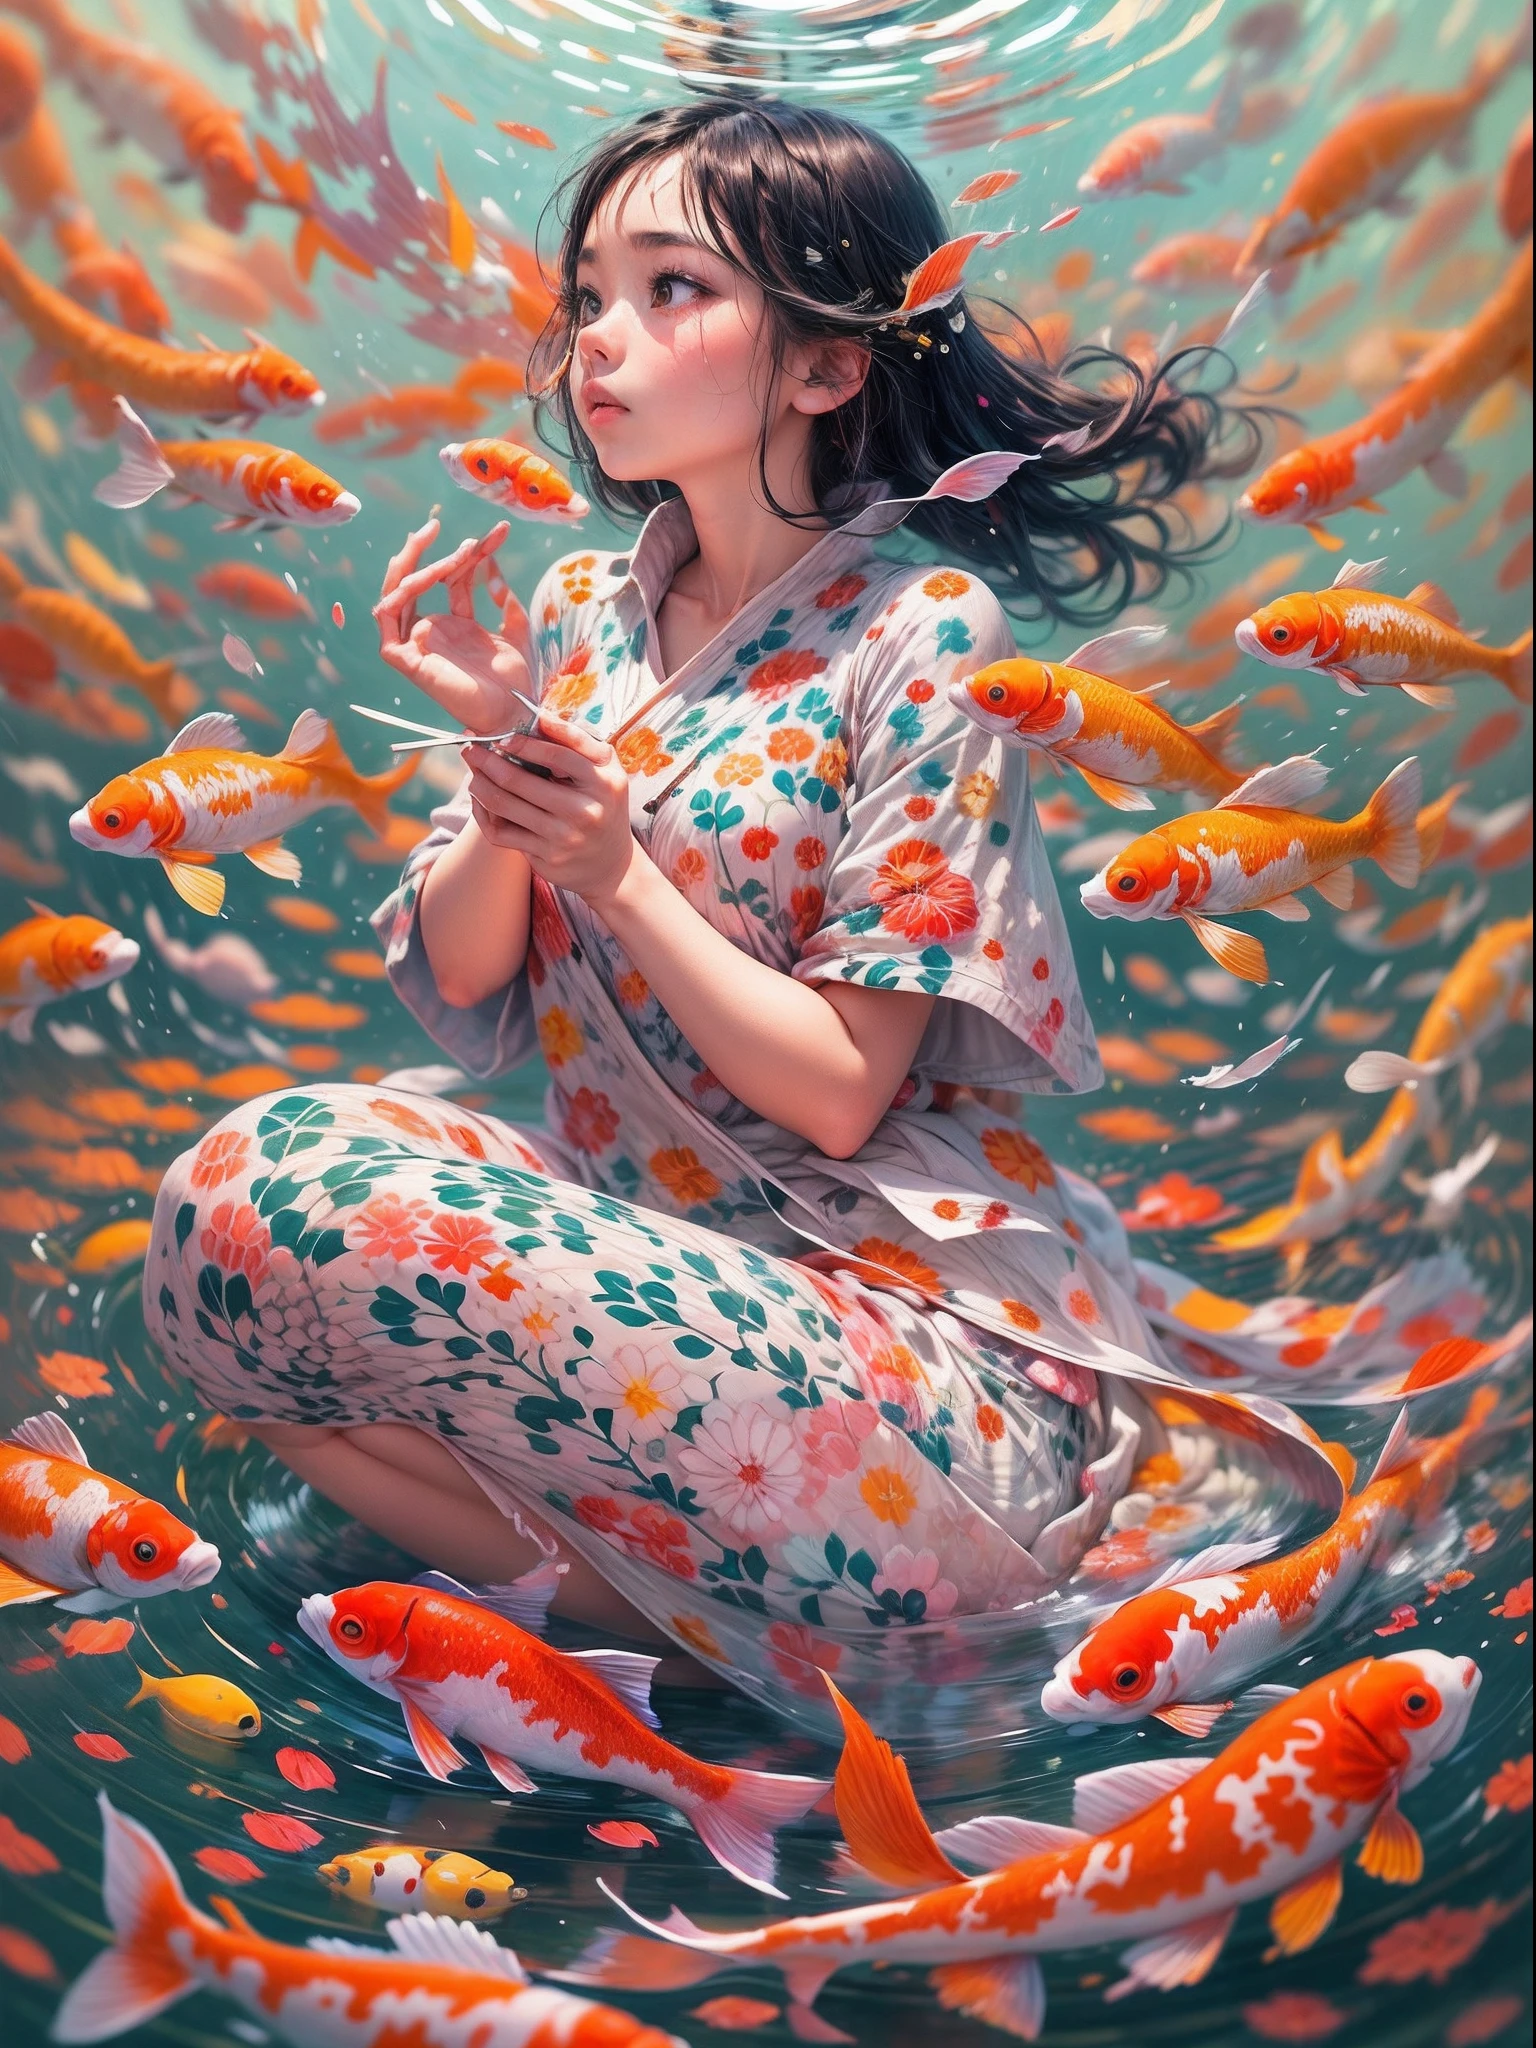 chef-d&#39;œuvre, art conceptuel, Imaginez une scène résonnant de sérénité et d’imagination. Une jeune fille plongée dans un roman captivant, accompagné d&#39;un fond de ciel harmonieux. Les poissons Koi dansent gracieusement autour d&#39;elle, leurs couleurs vibrantes éclatant sur le ciel serein. Cette œuvre d&#39;art exquise est un hommage à l&#39;artiste contemporain Yayoi Kusama., avec des motifs complexes et un jeu captivant de couleurs et de lumière.